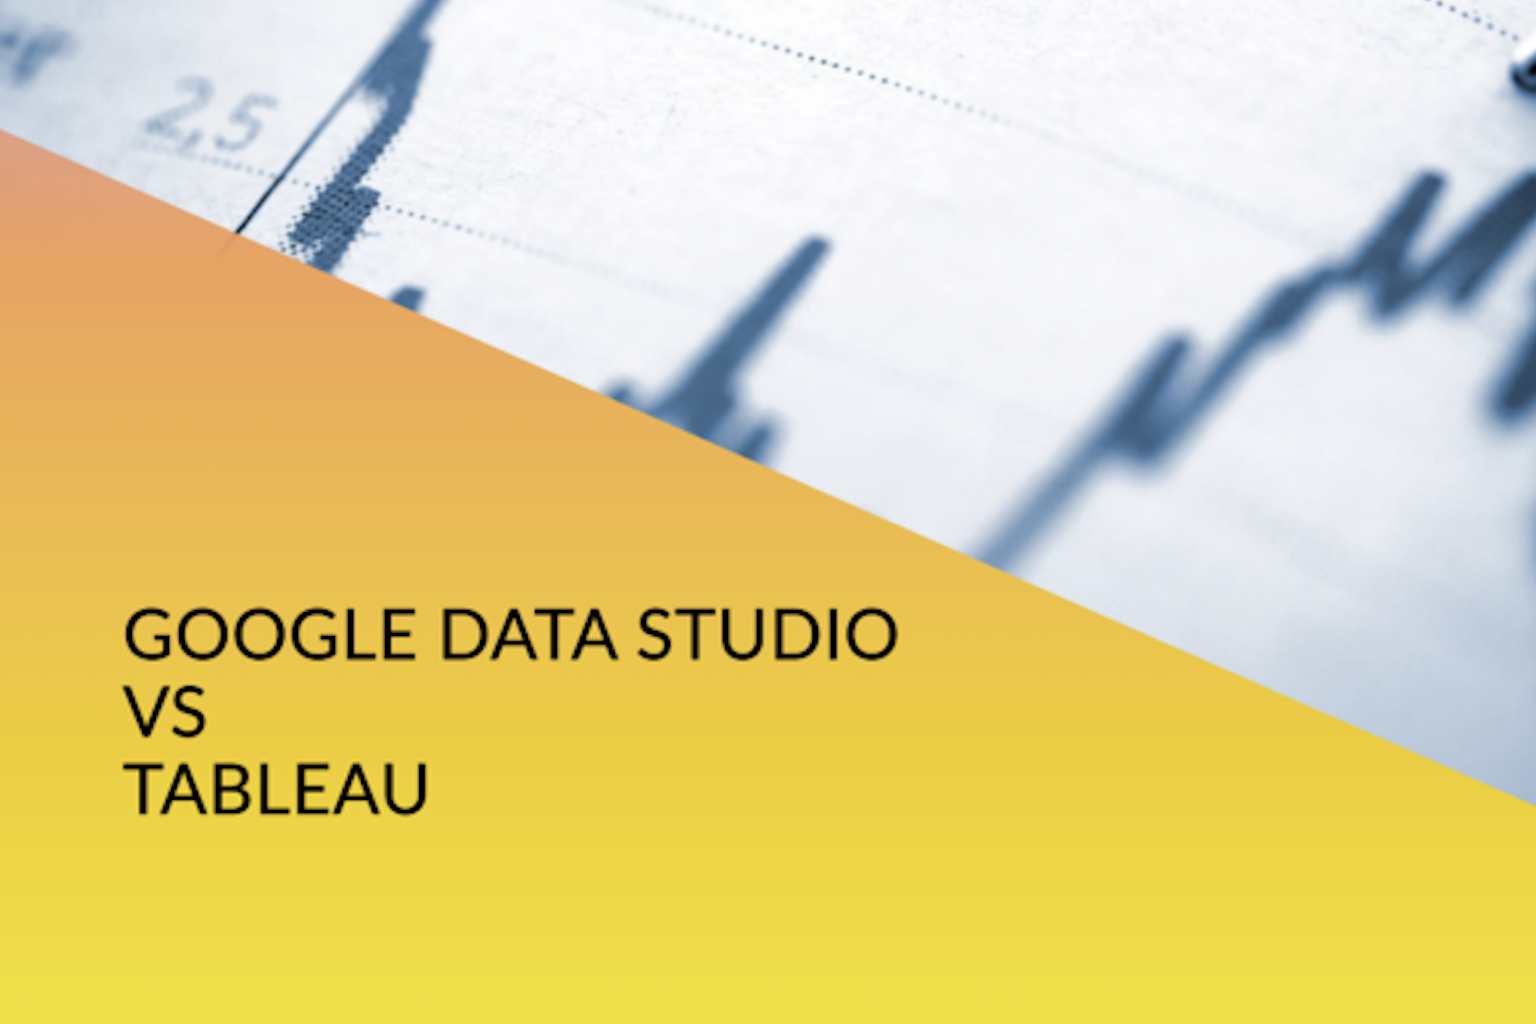 Descubre la comparación definitiva entre Google Data Studio y Tableau. Descubre qué herramienta se adapta perfectamente a tus necesidades de visualización de datos. ¡Haz clic para obtener más información!